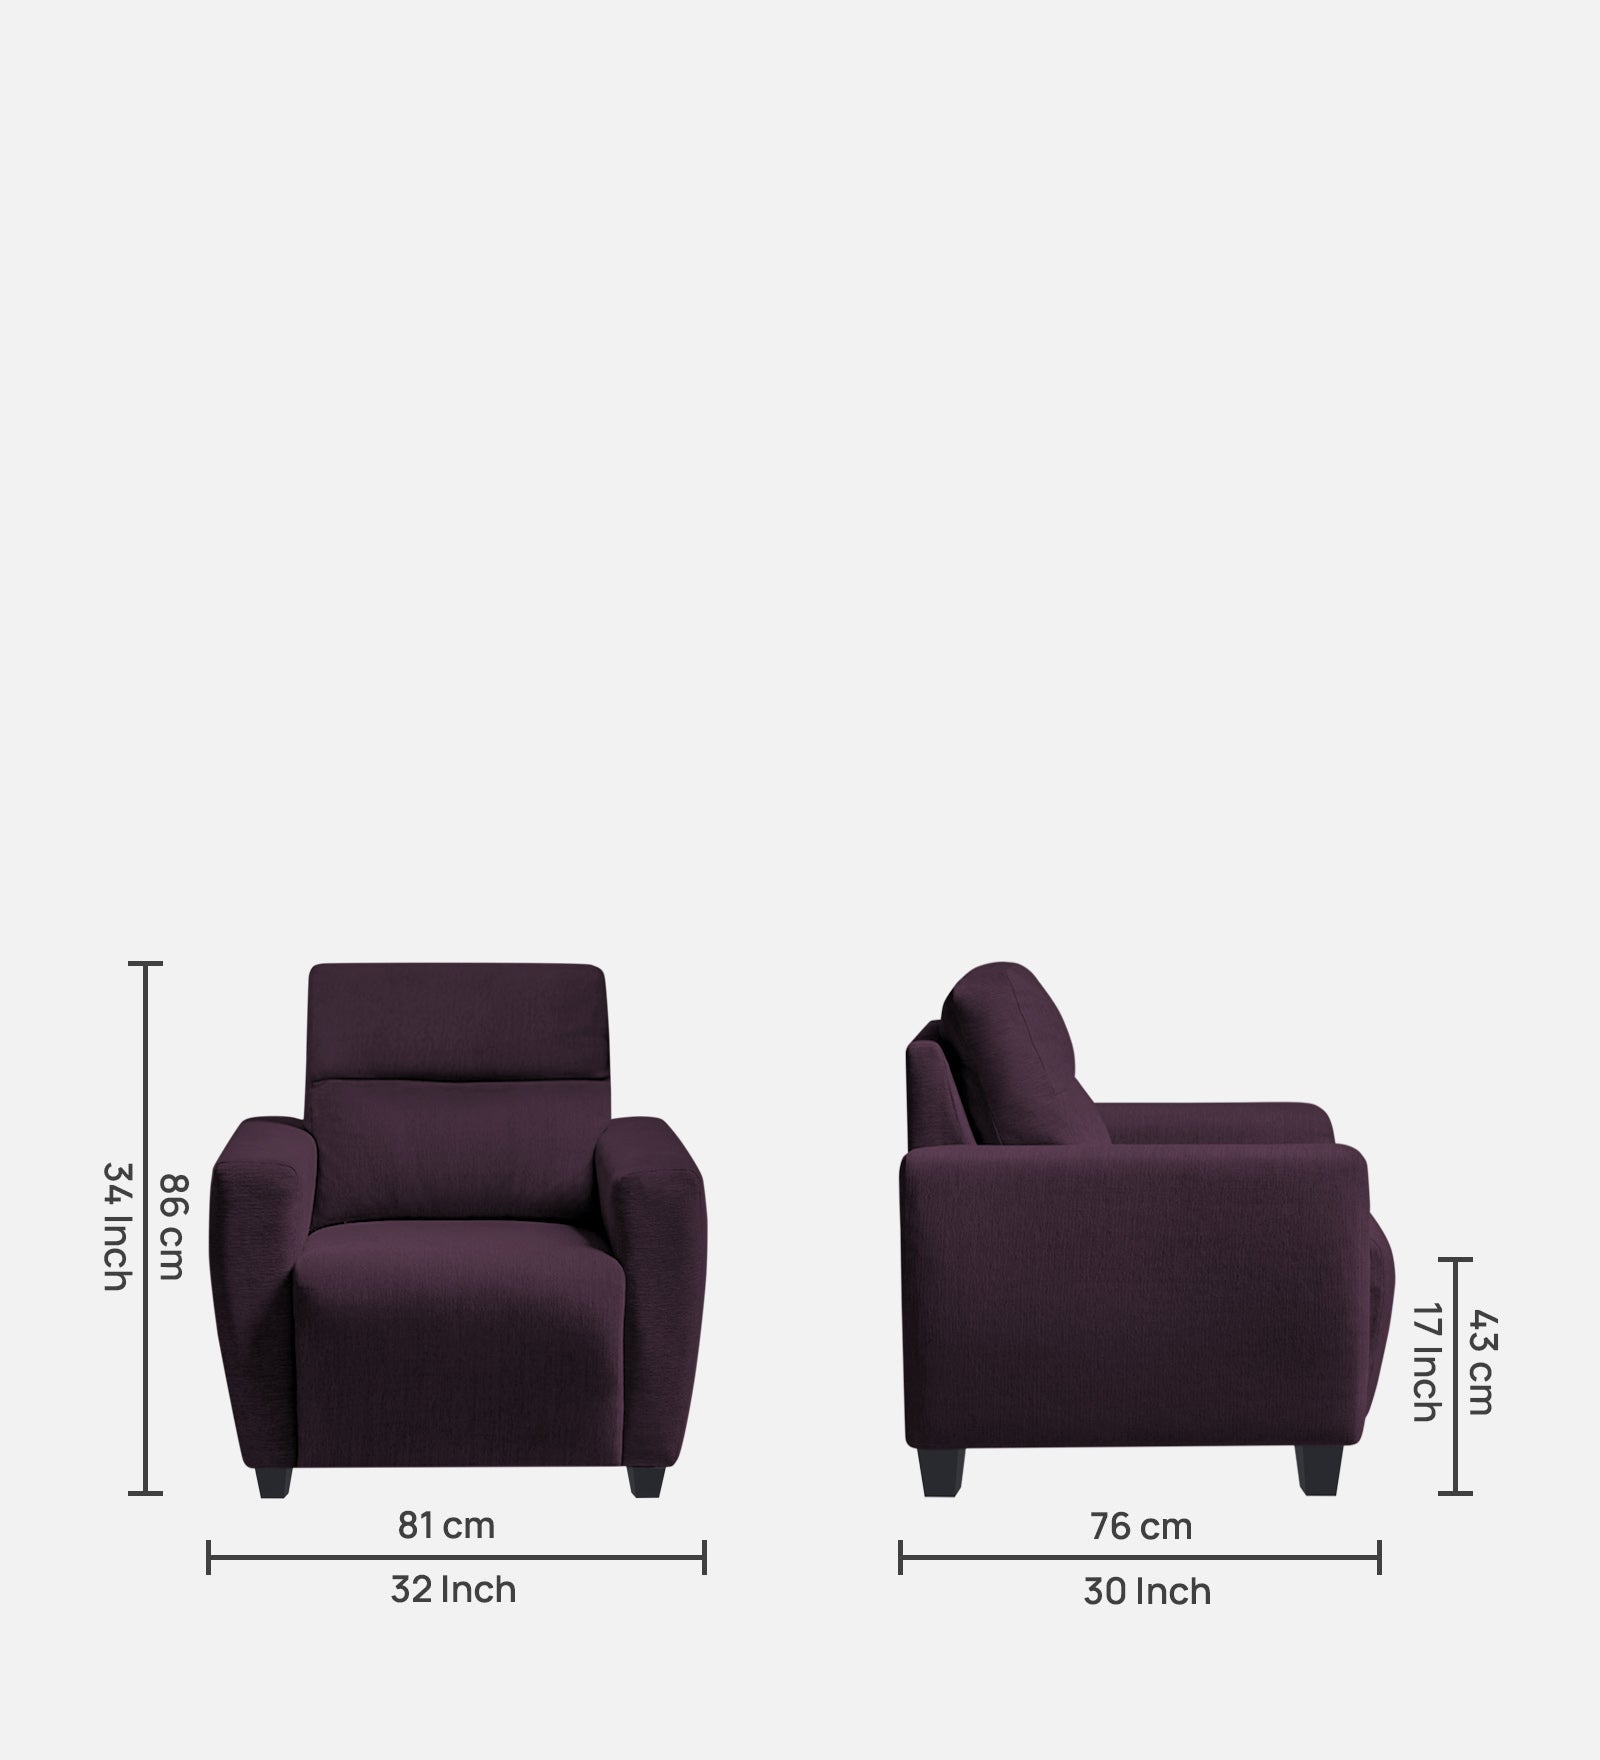 Bakadi Fabric 1 Seater Sofa in Greek Purple Colour